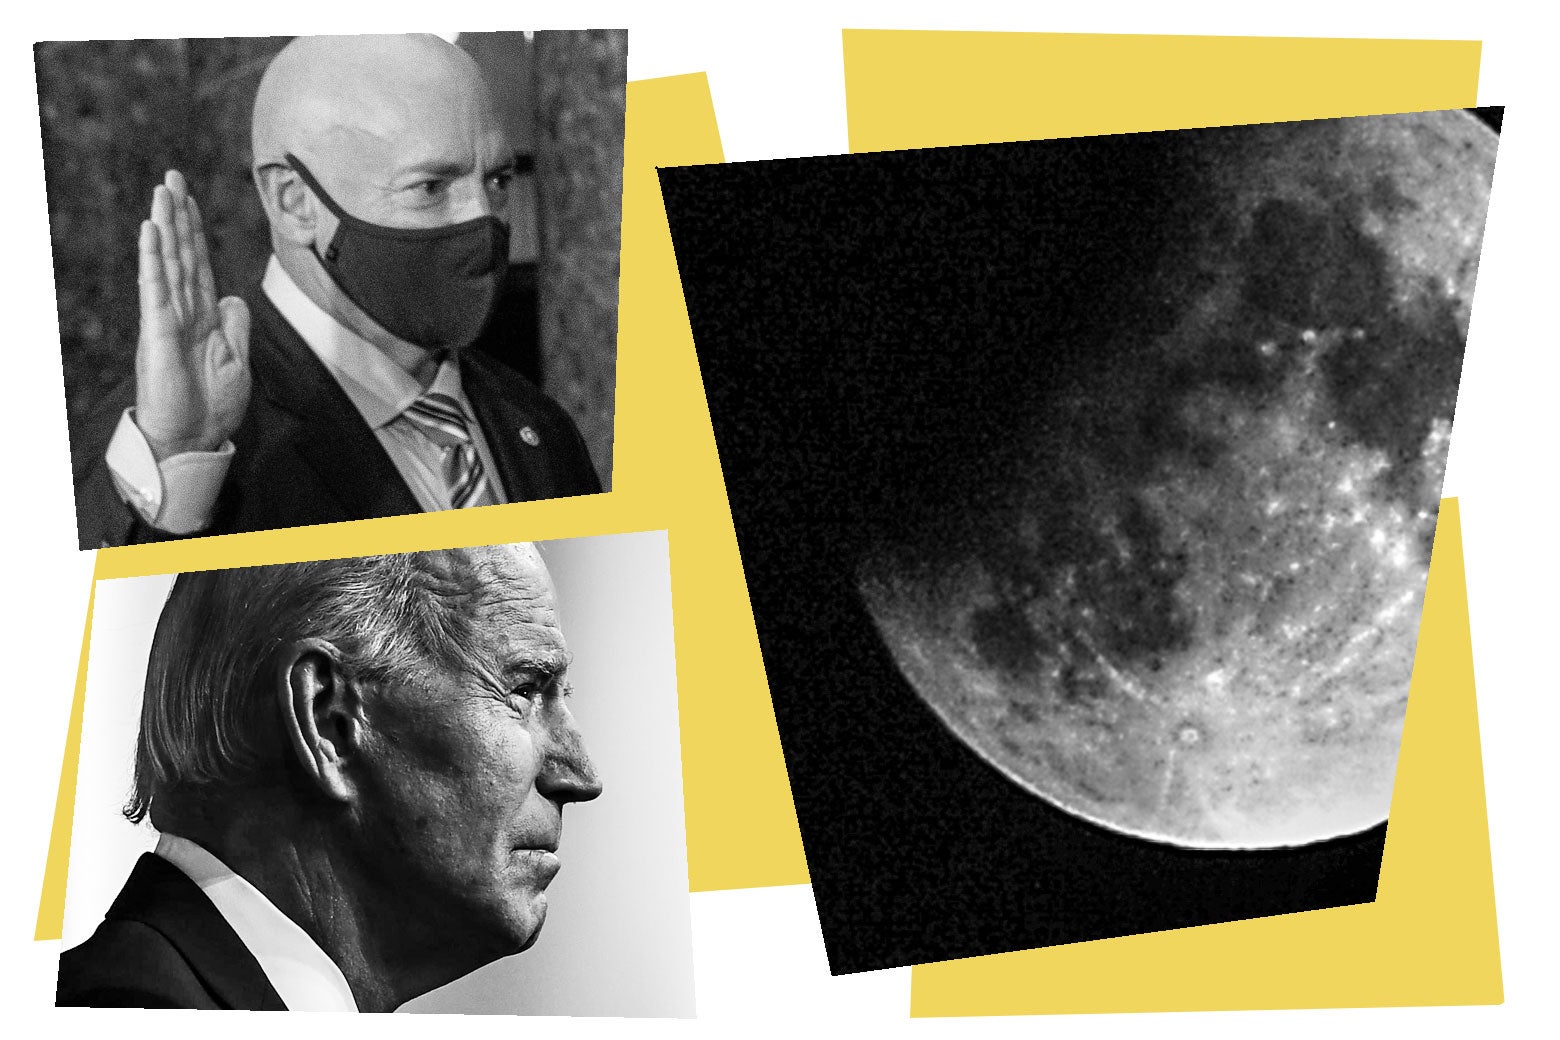 Mark Kelly, Joe Biden, and the moon